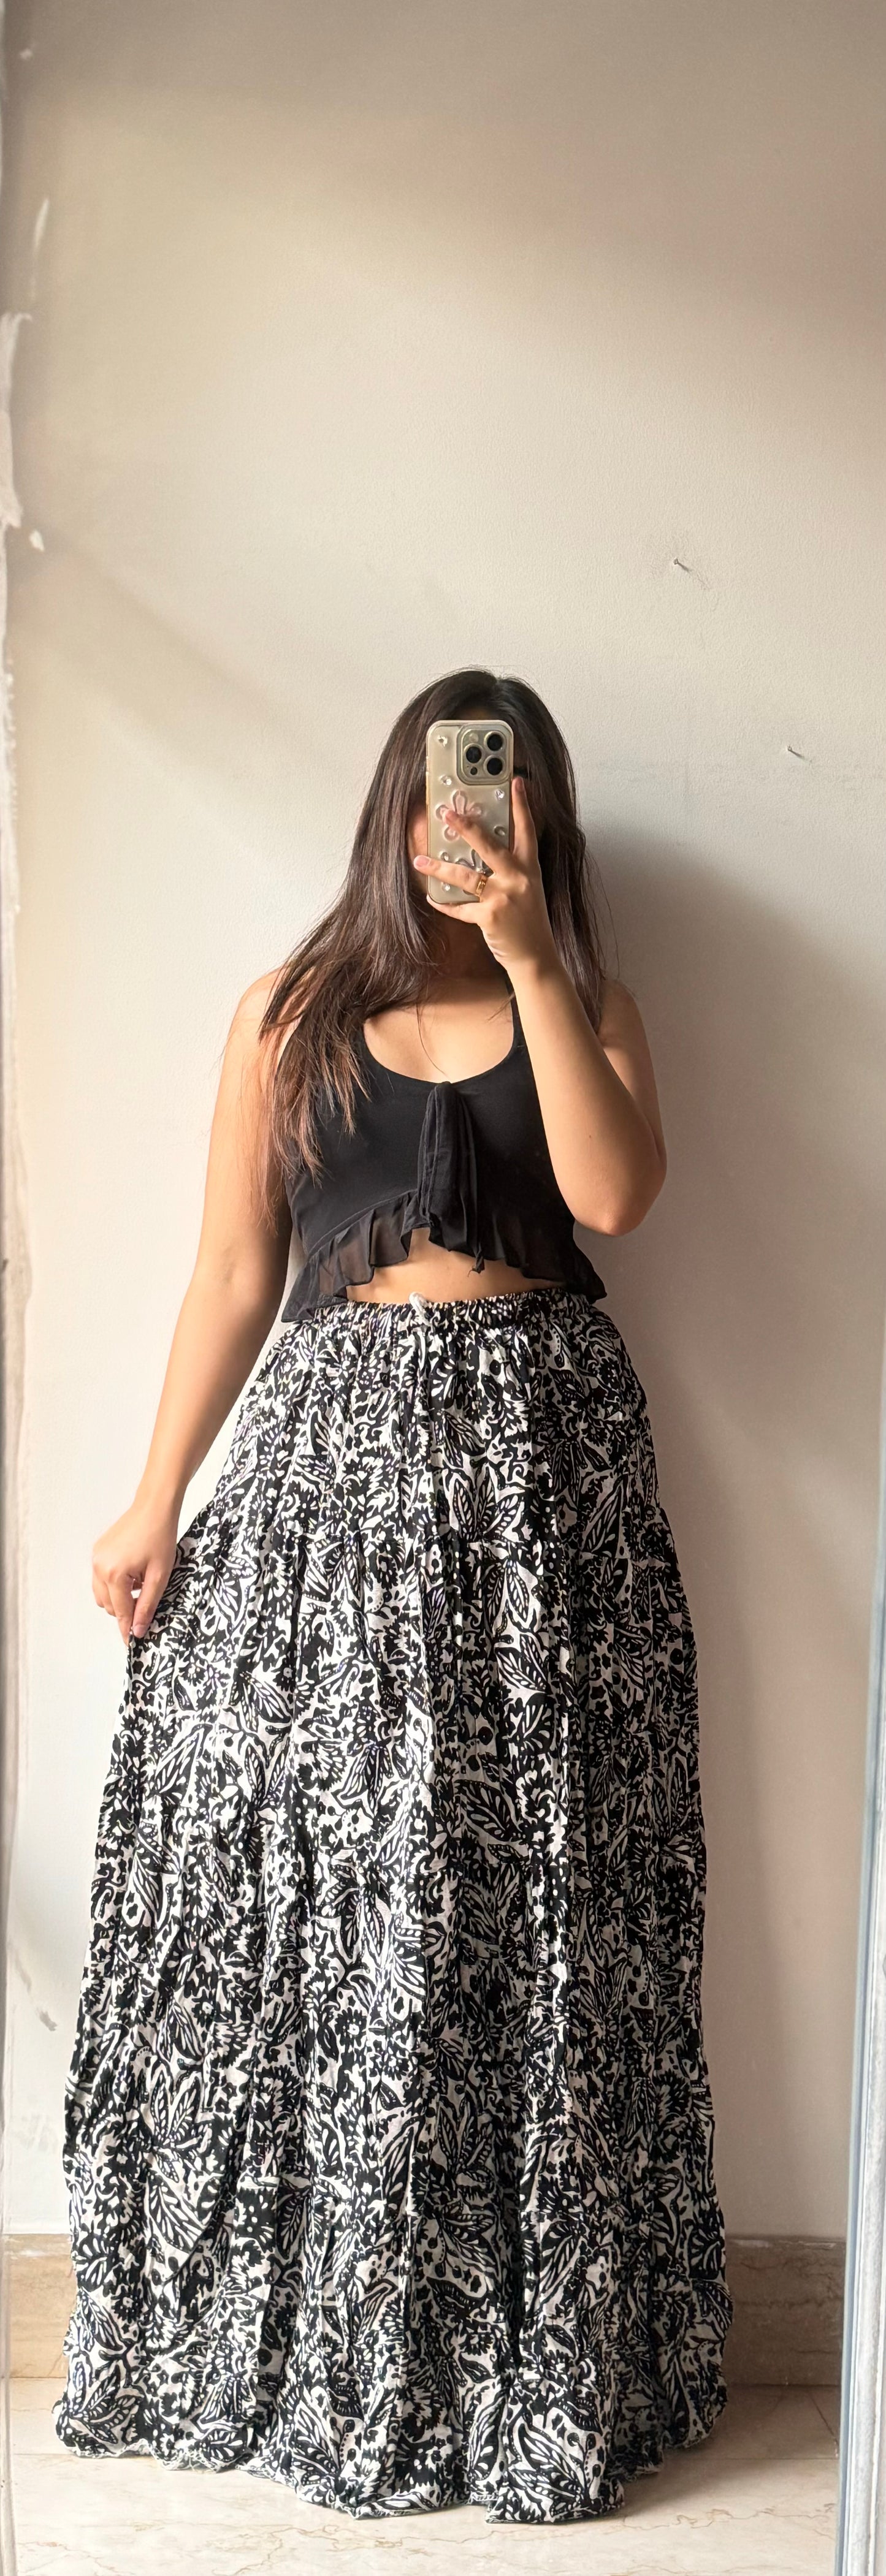 Black Royal skirt